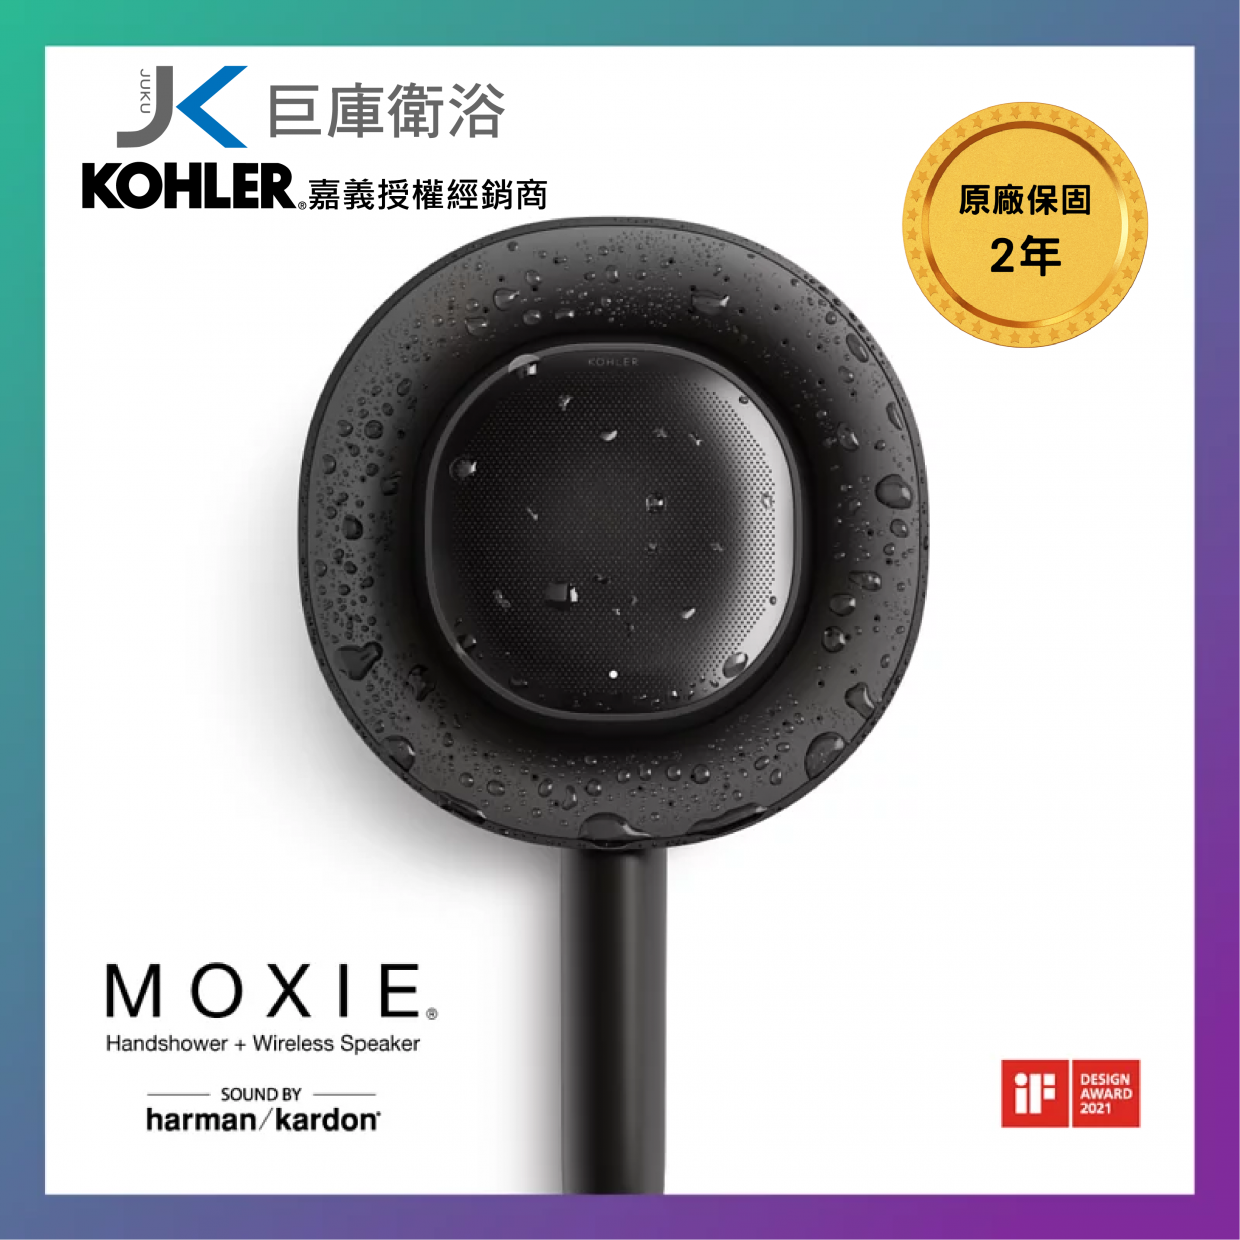 KOHLER-MOXIE 2.0 K-R28241T-NKE-BL藍芽魔音手持花灑(霧黑)